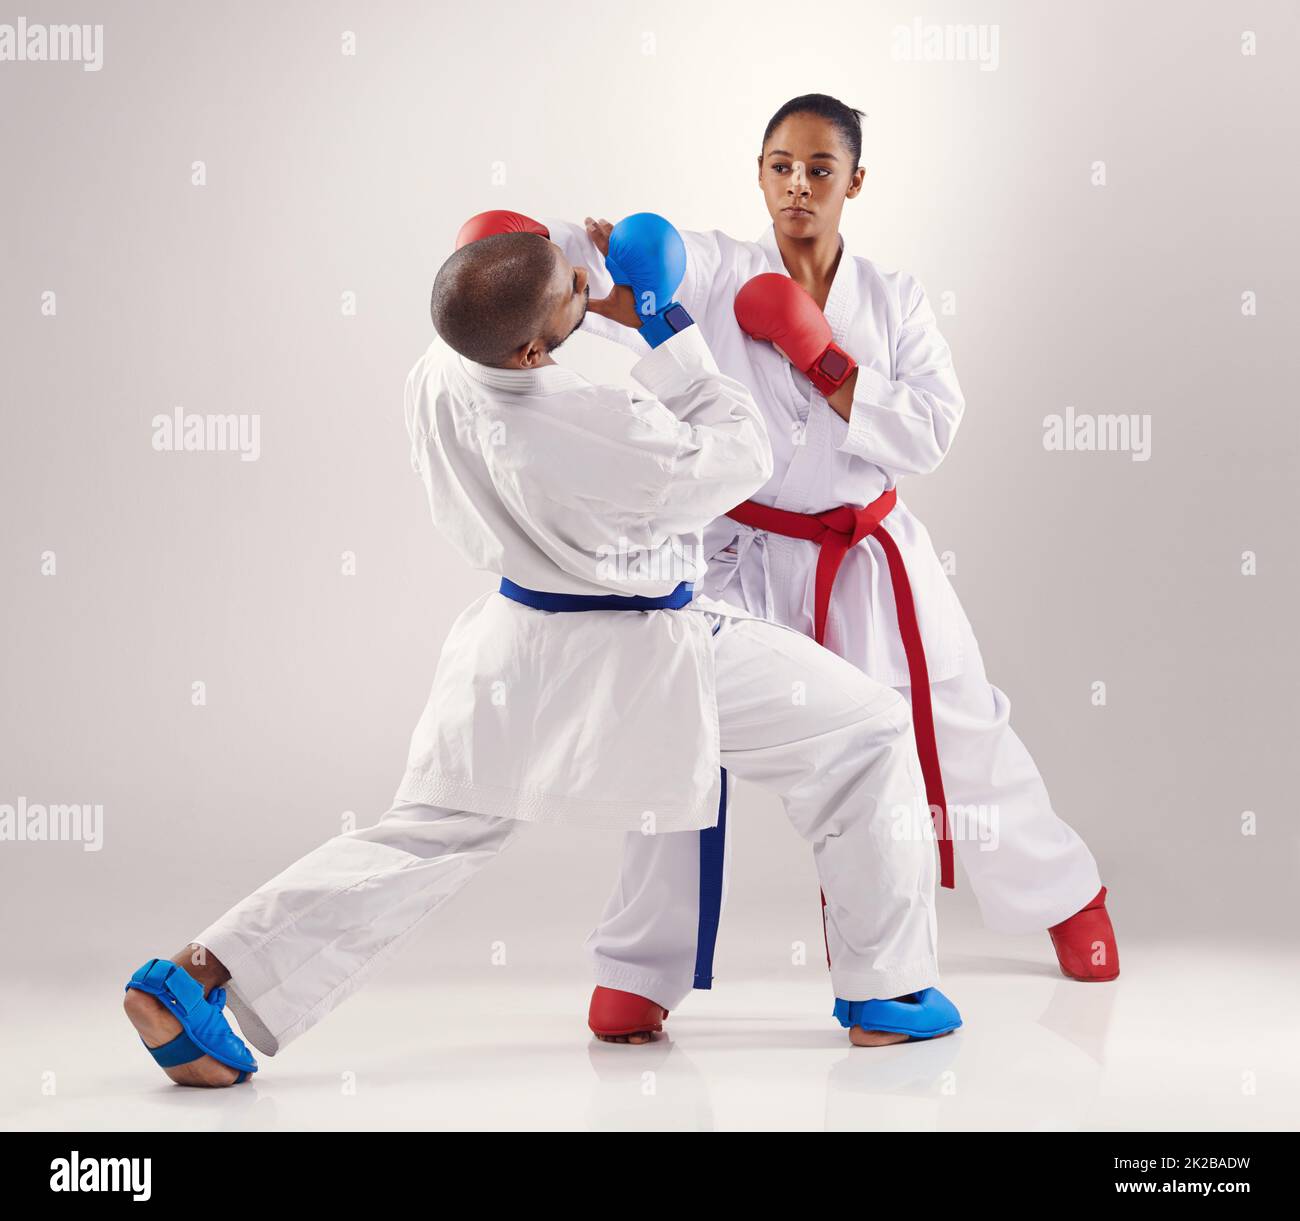 Vermeiden Sie ihre Schläge. Zwei Menschen machen Karate. Stockfoto